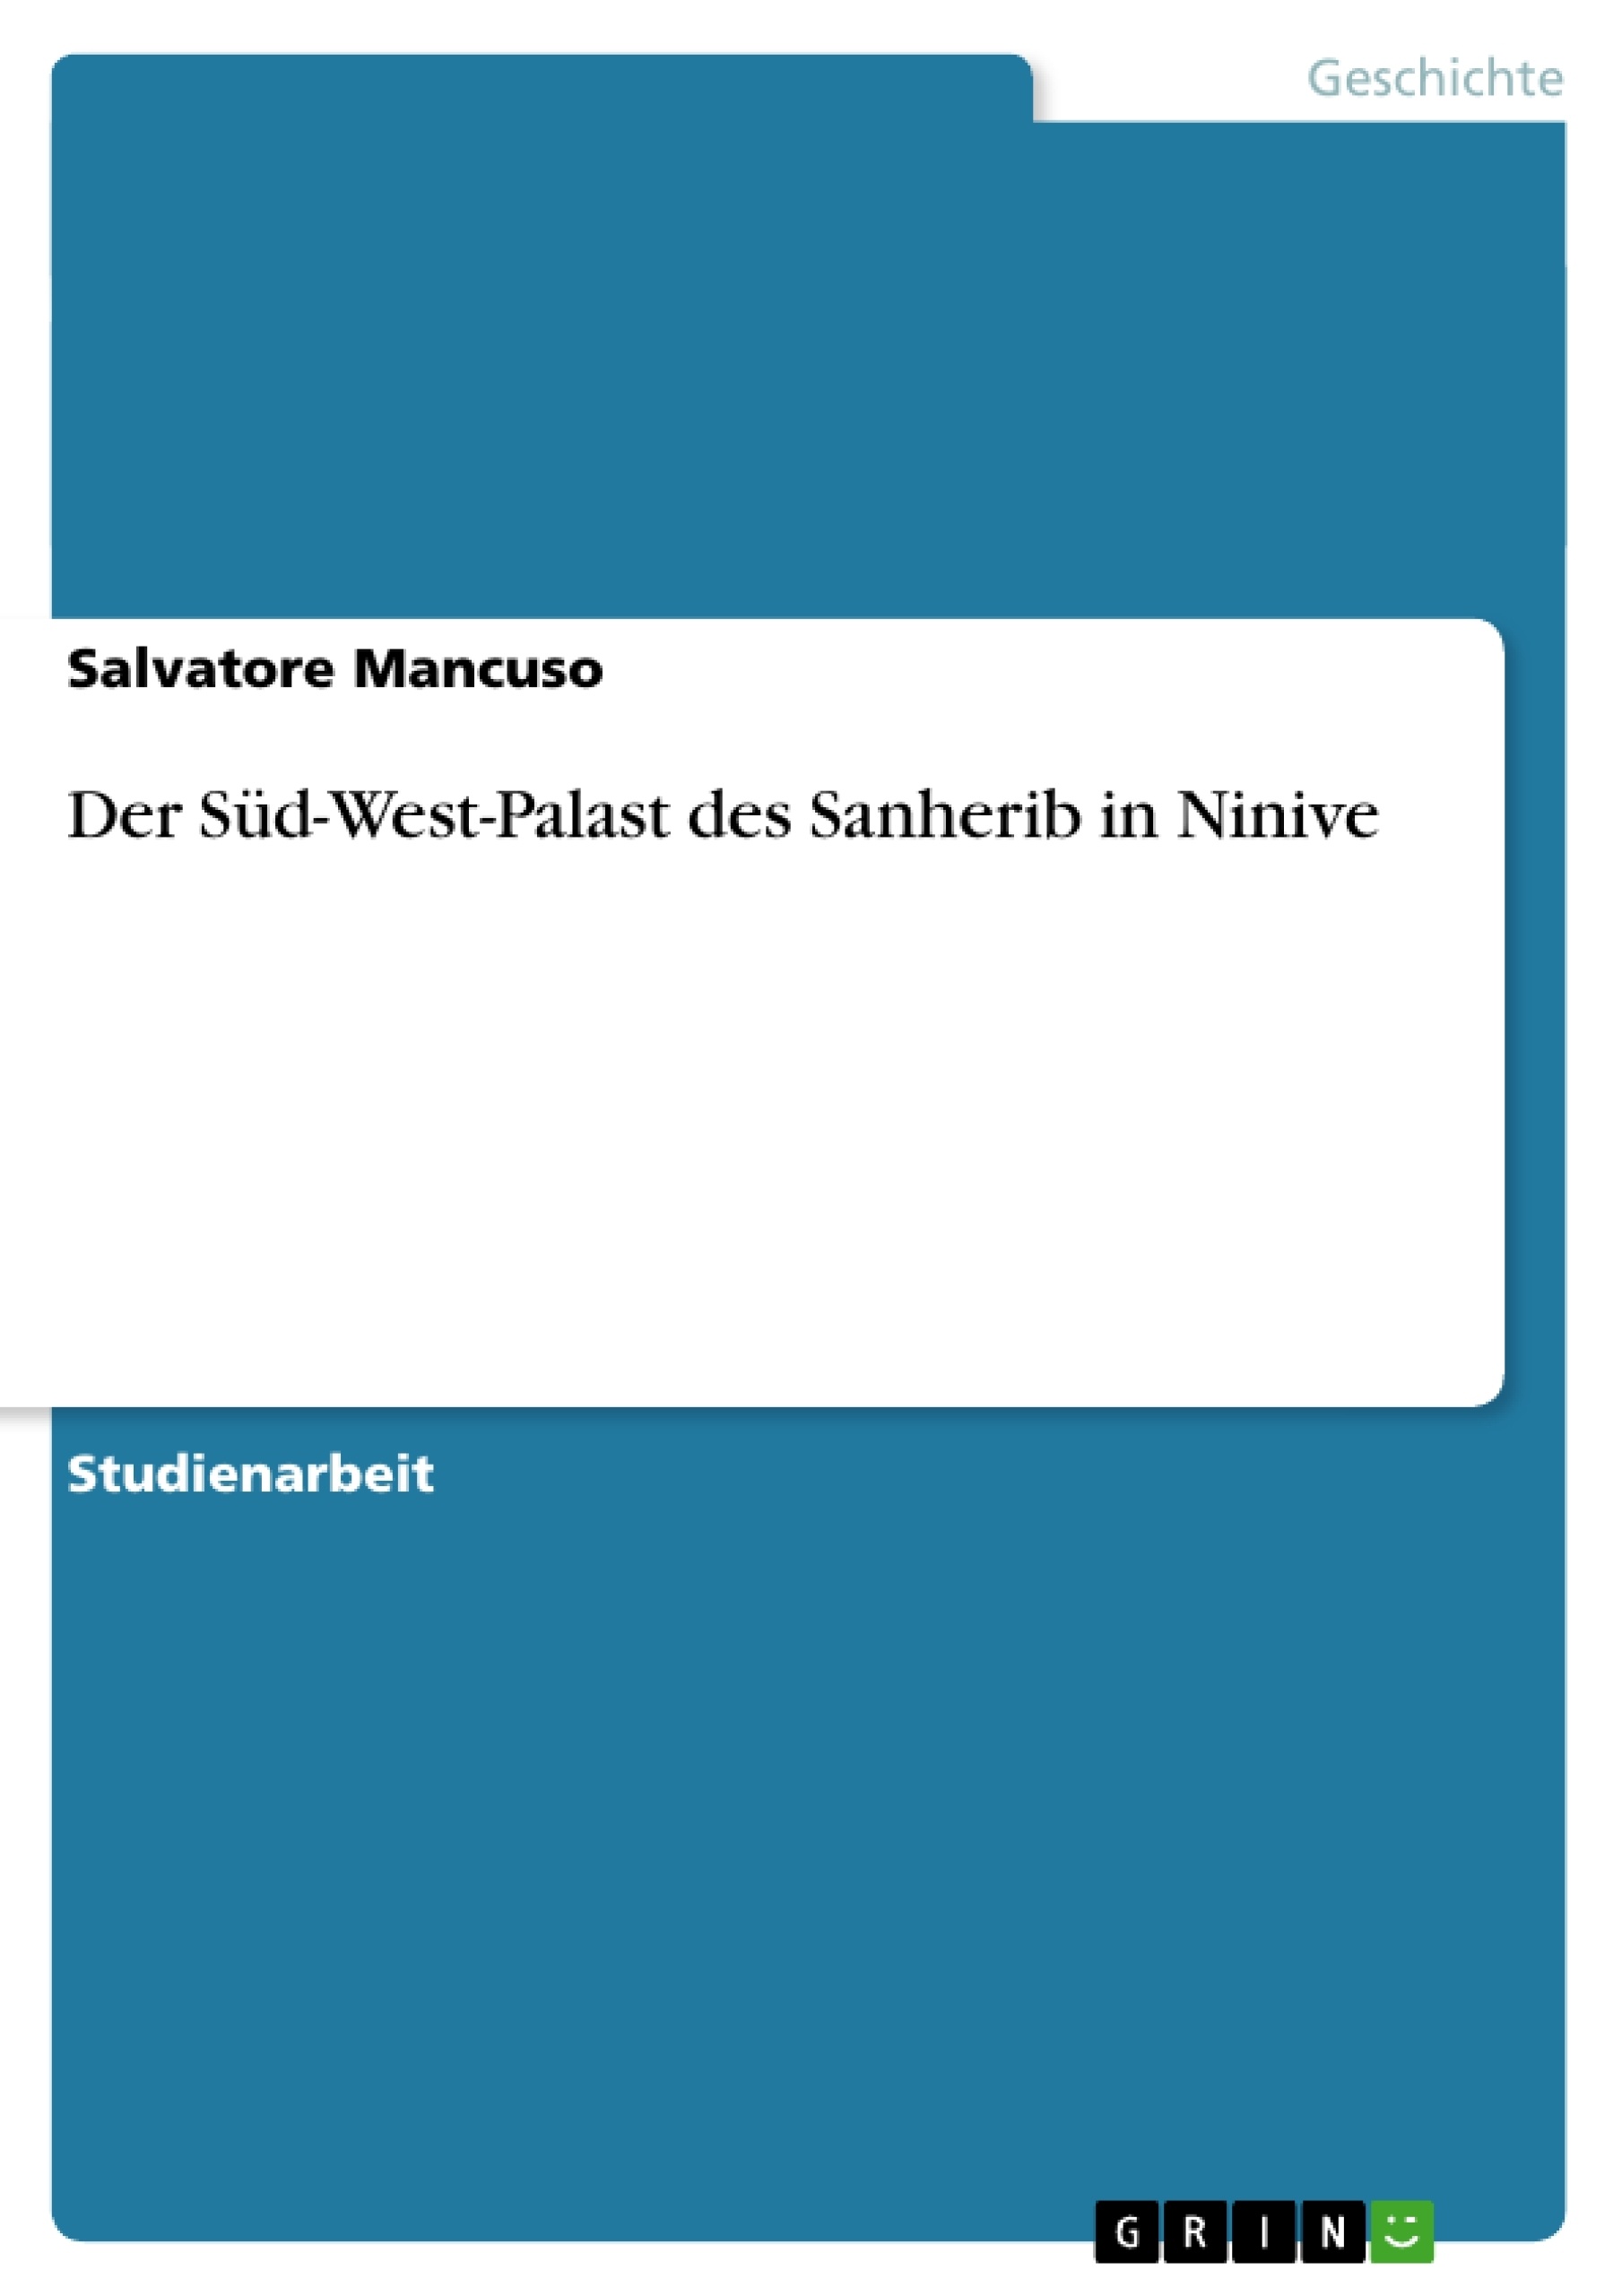 Título: Der Süd-West-Palast des Sanherib in Ninive